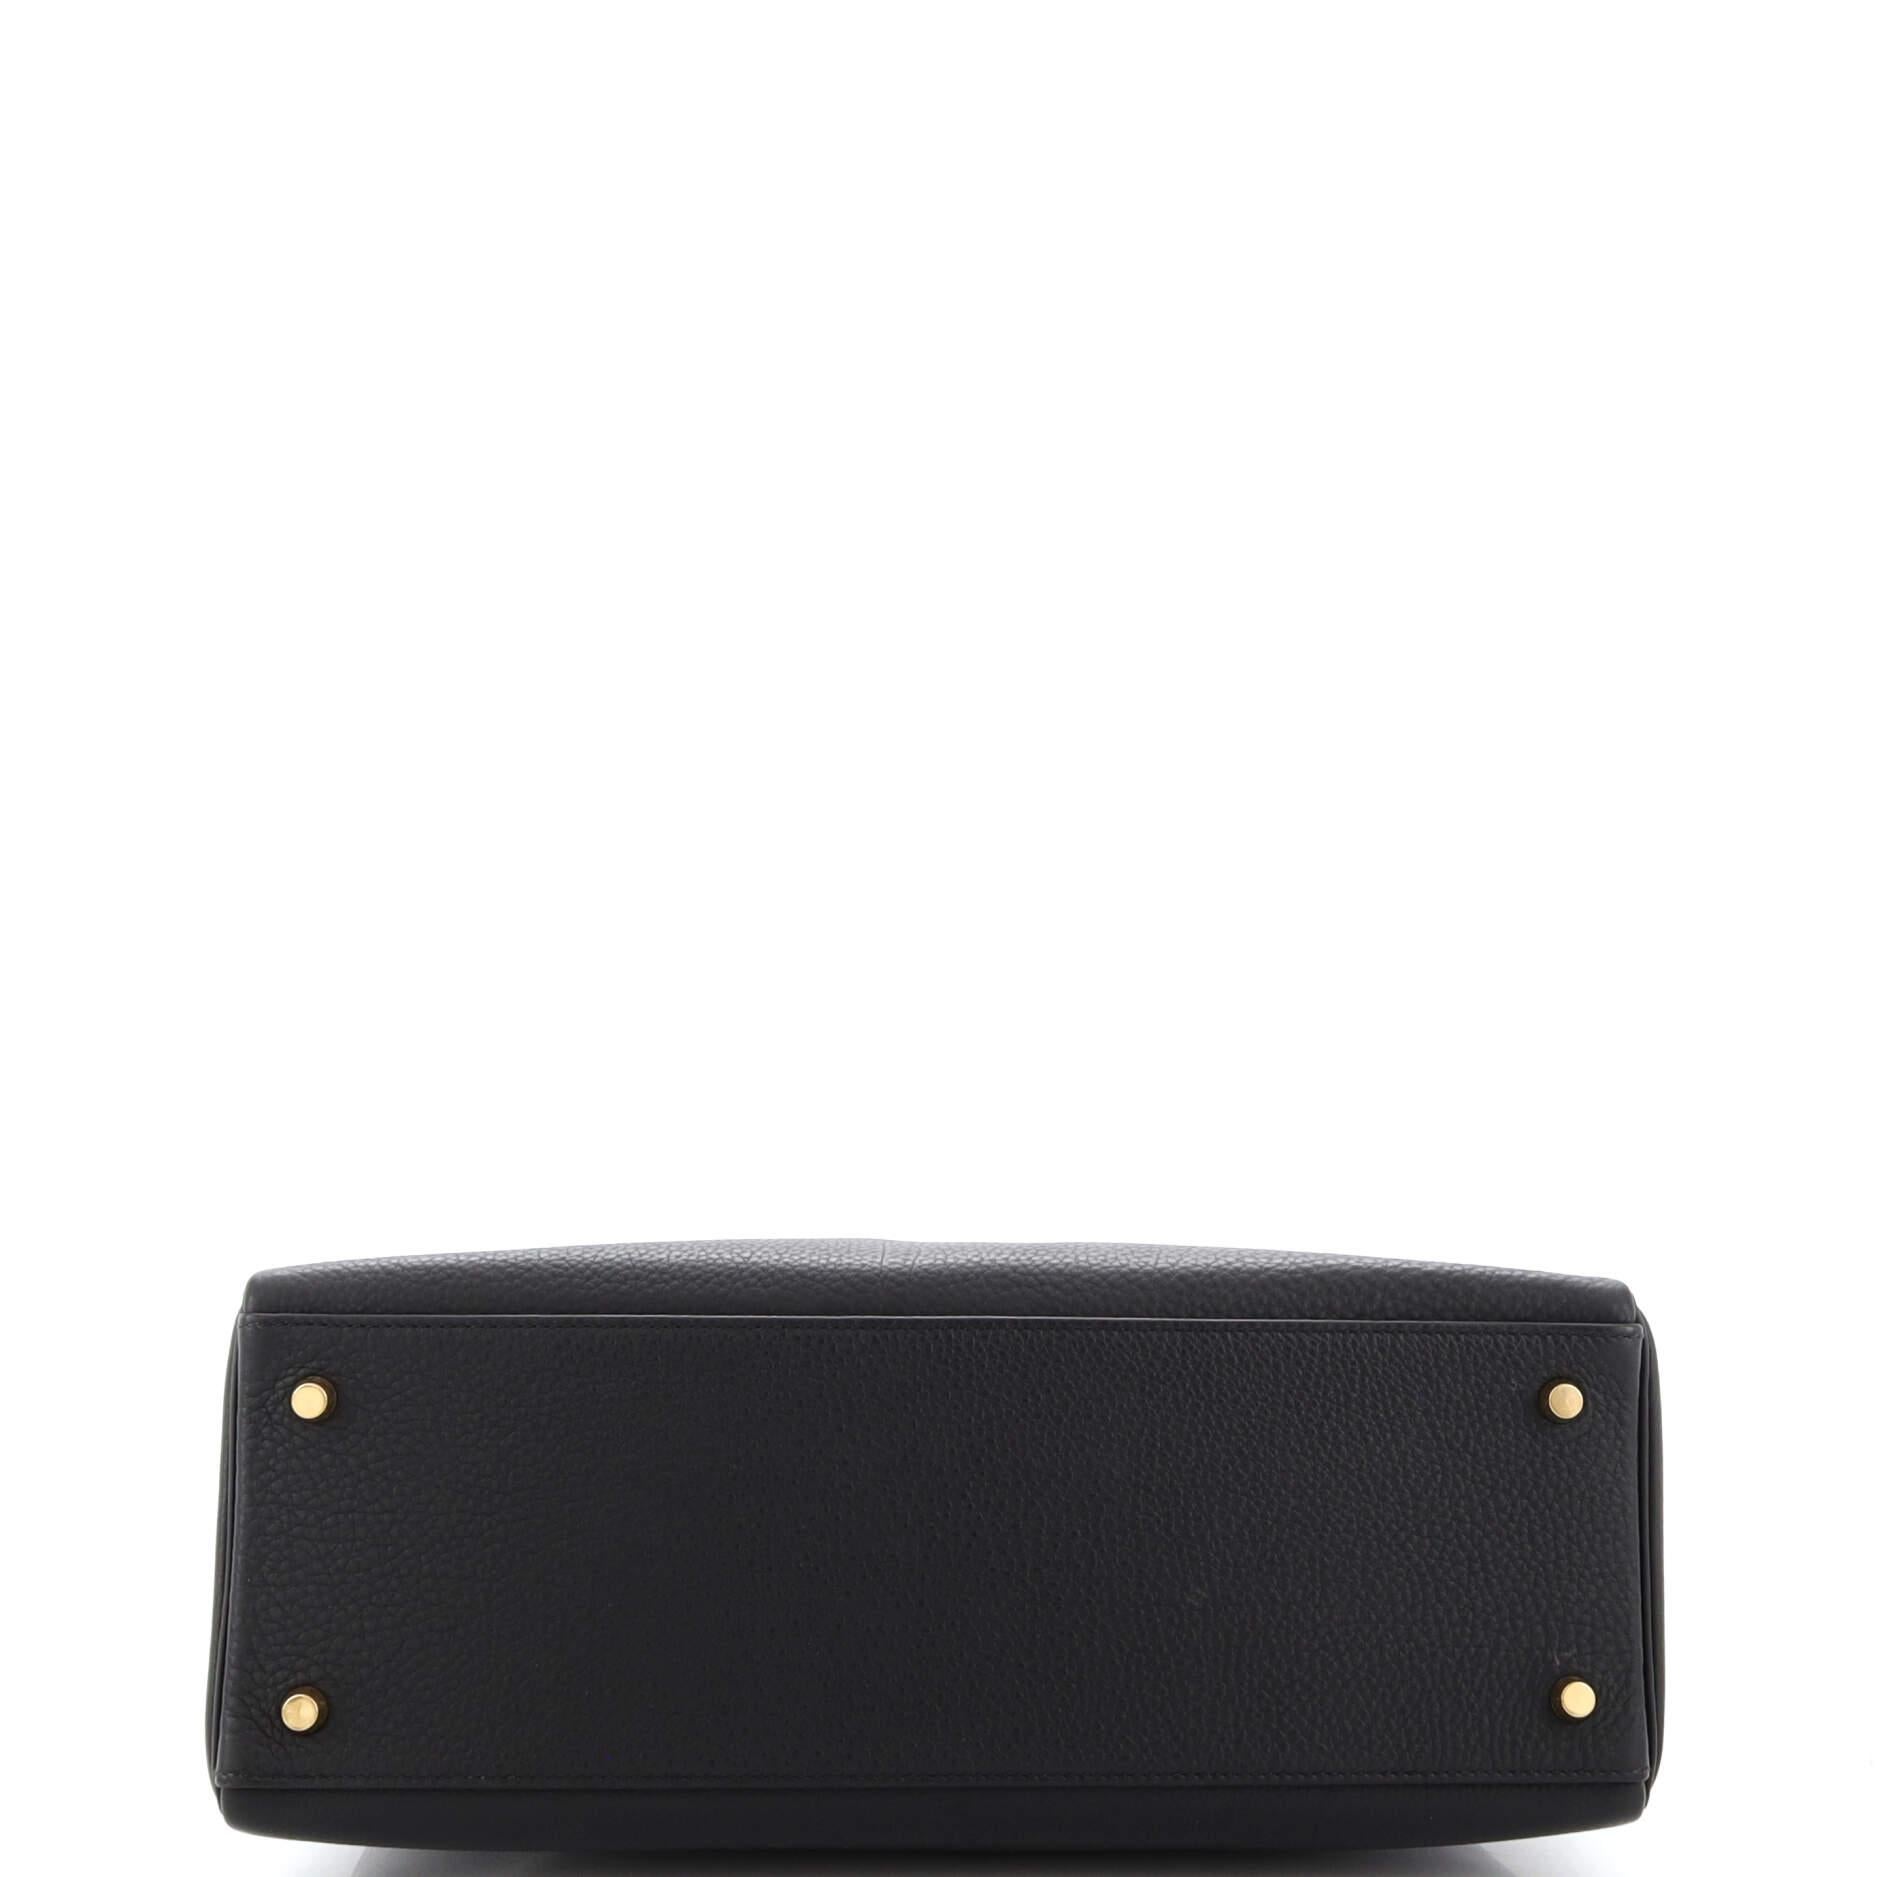 Hermes Kelly Handbag Noir Togo with Gold Hardware 35 1